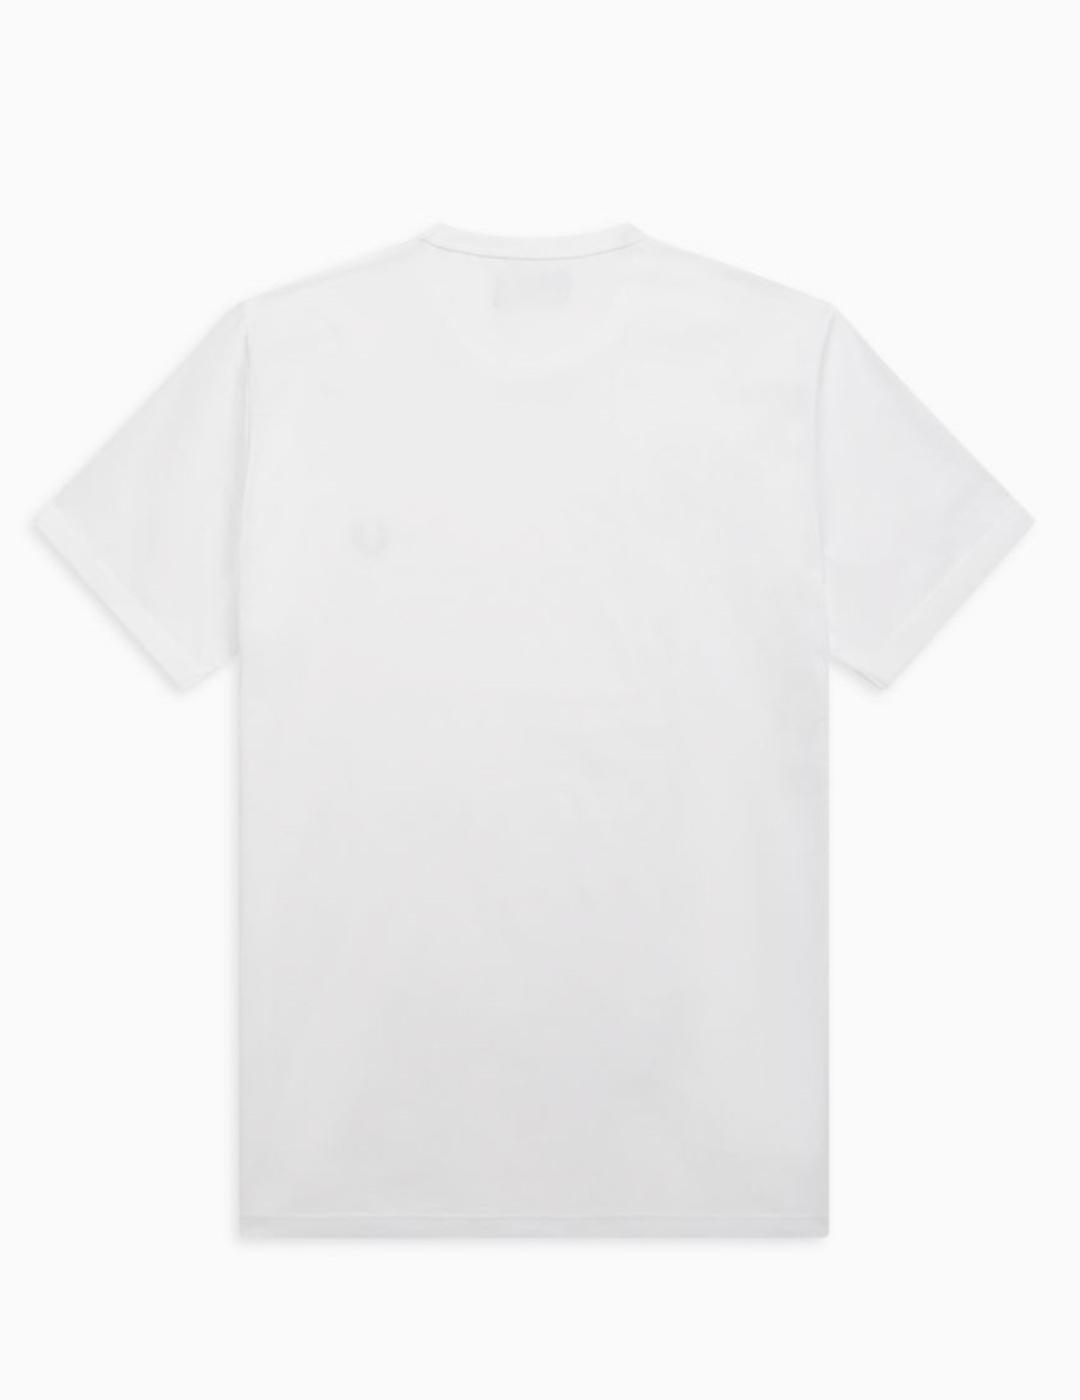 Camiseta Fred Perry BA blanco logo marino hombre-y